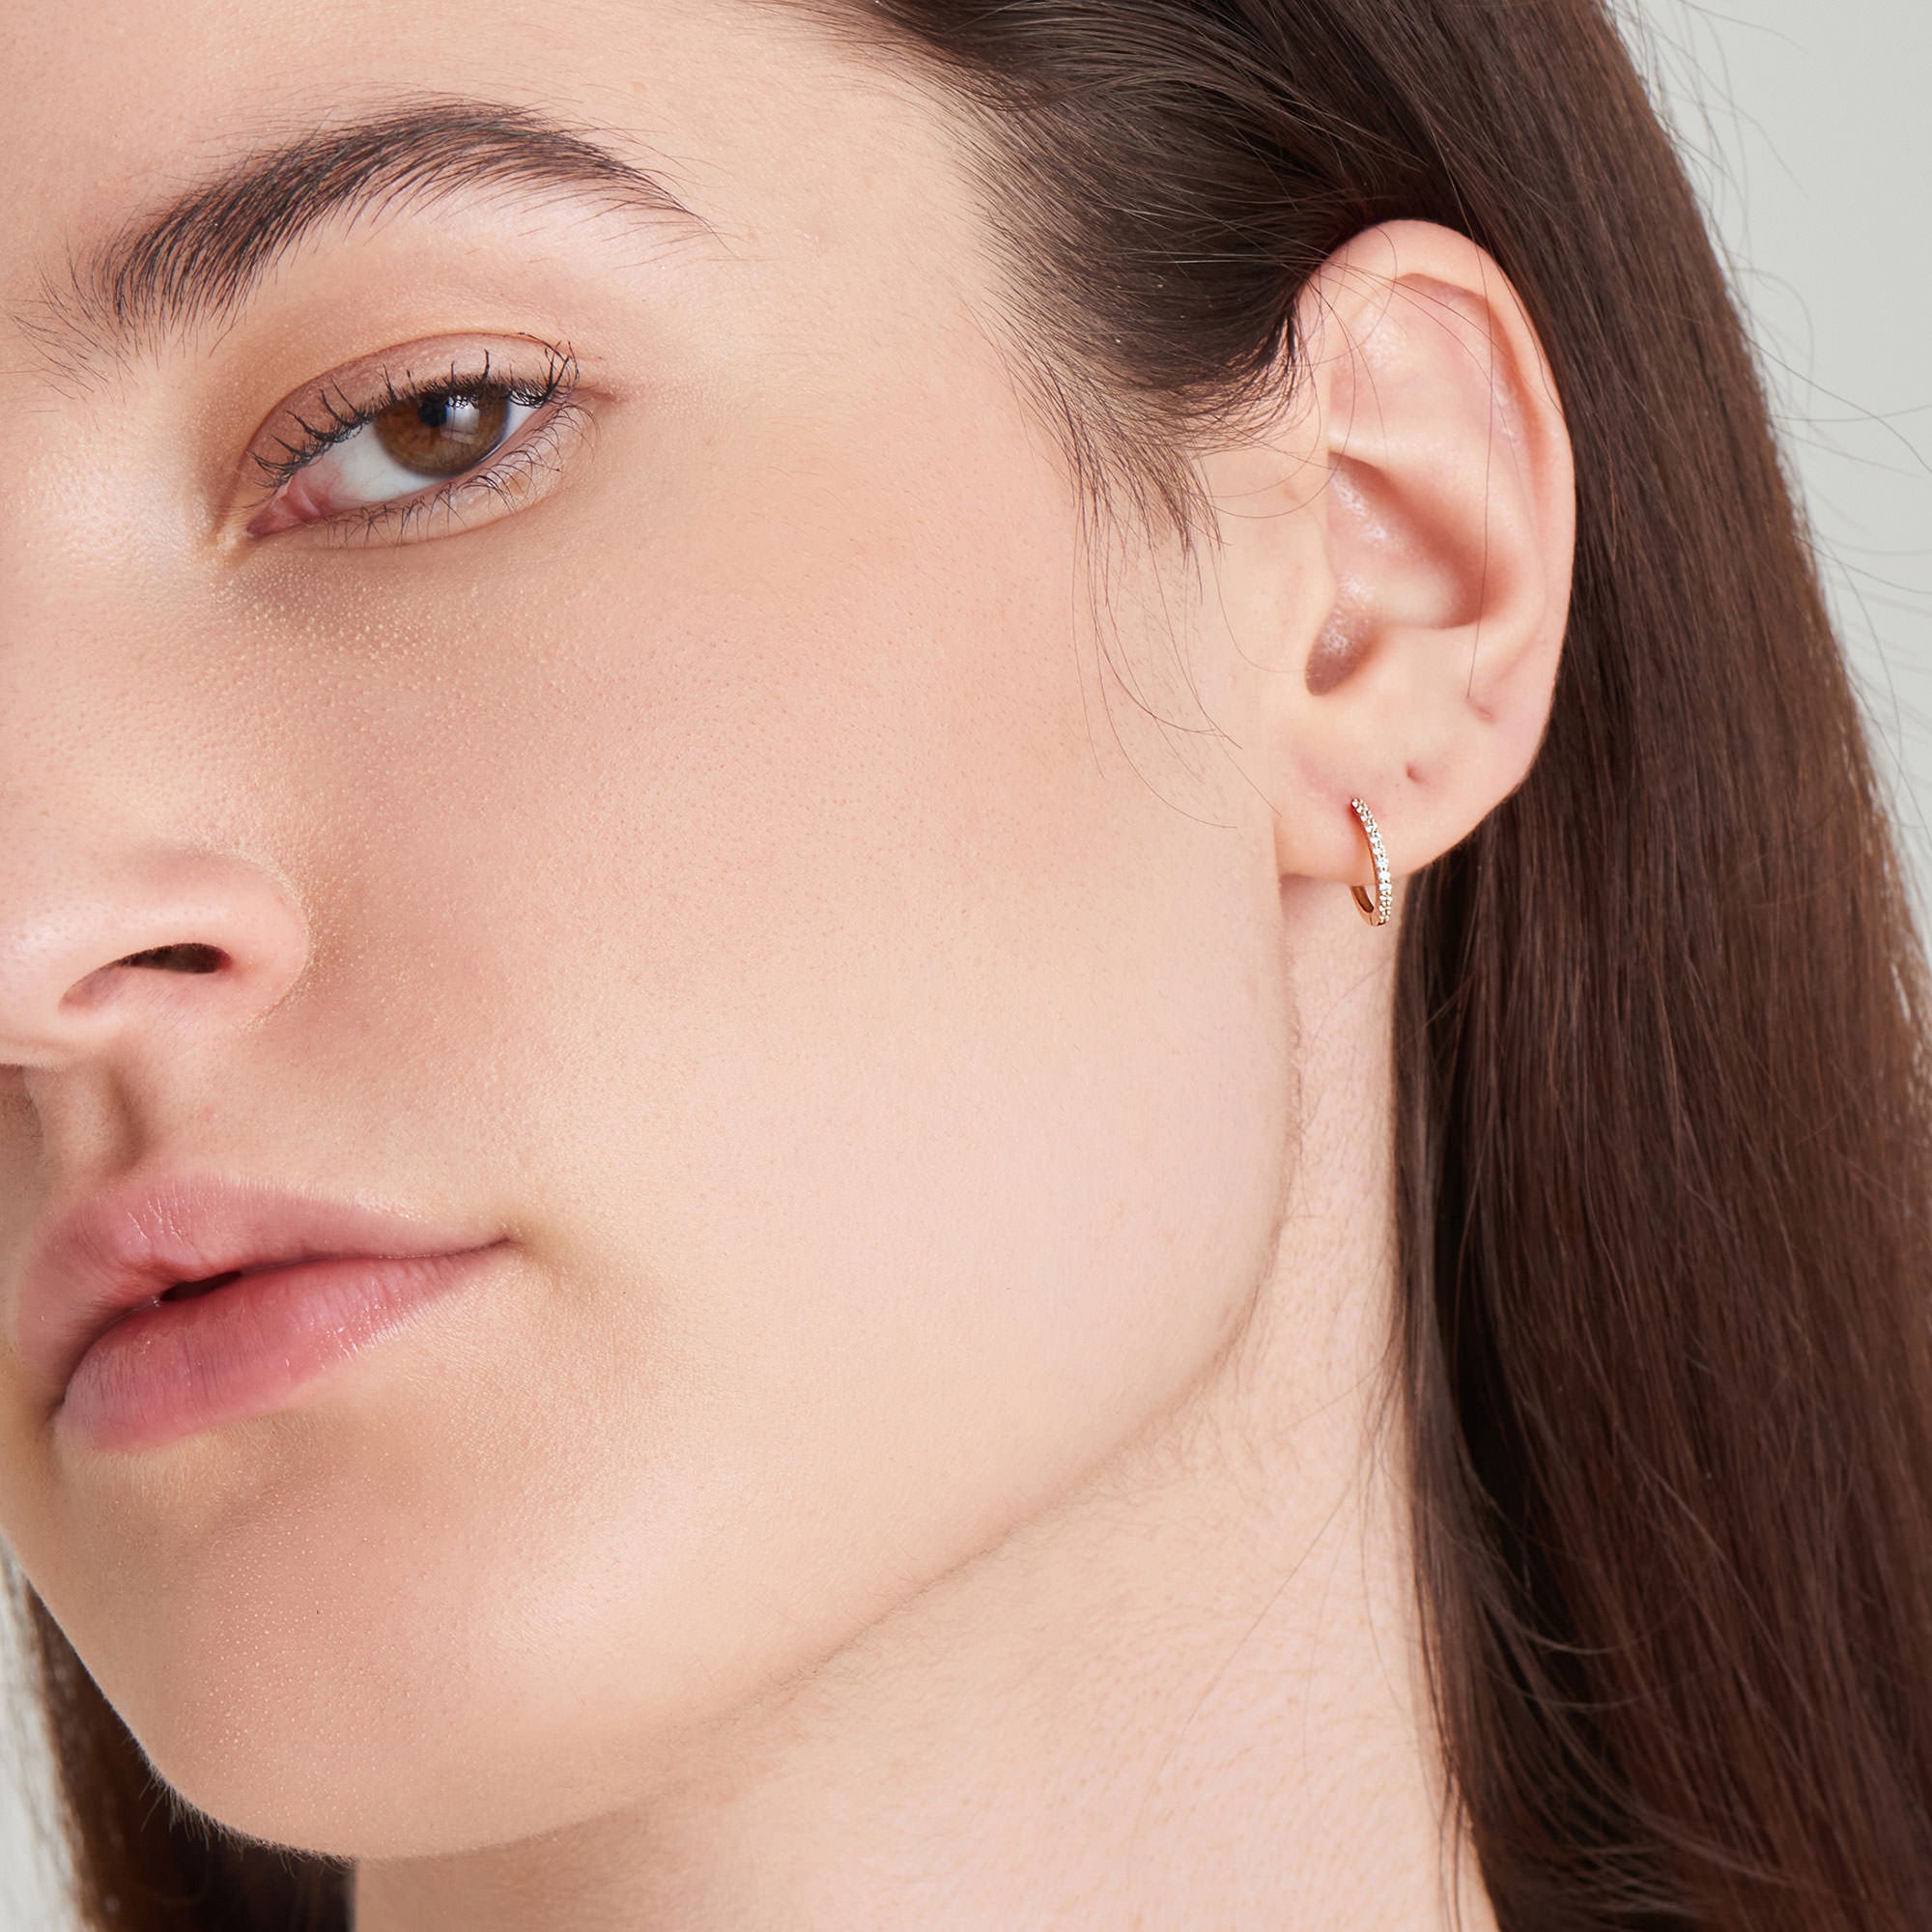 Natural Diamond Huggie Hoop Earrings - Dracakis Jewellers